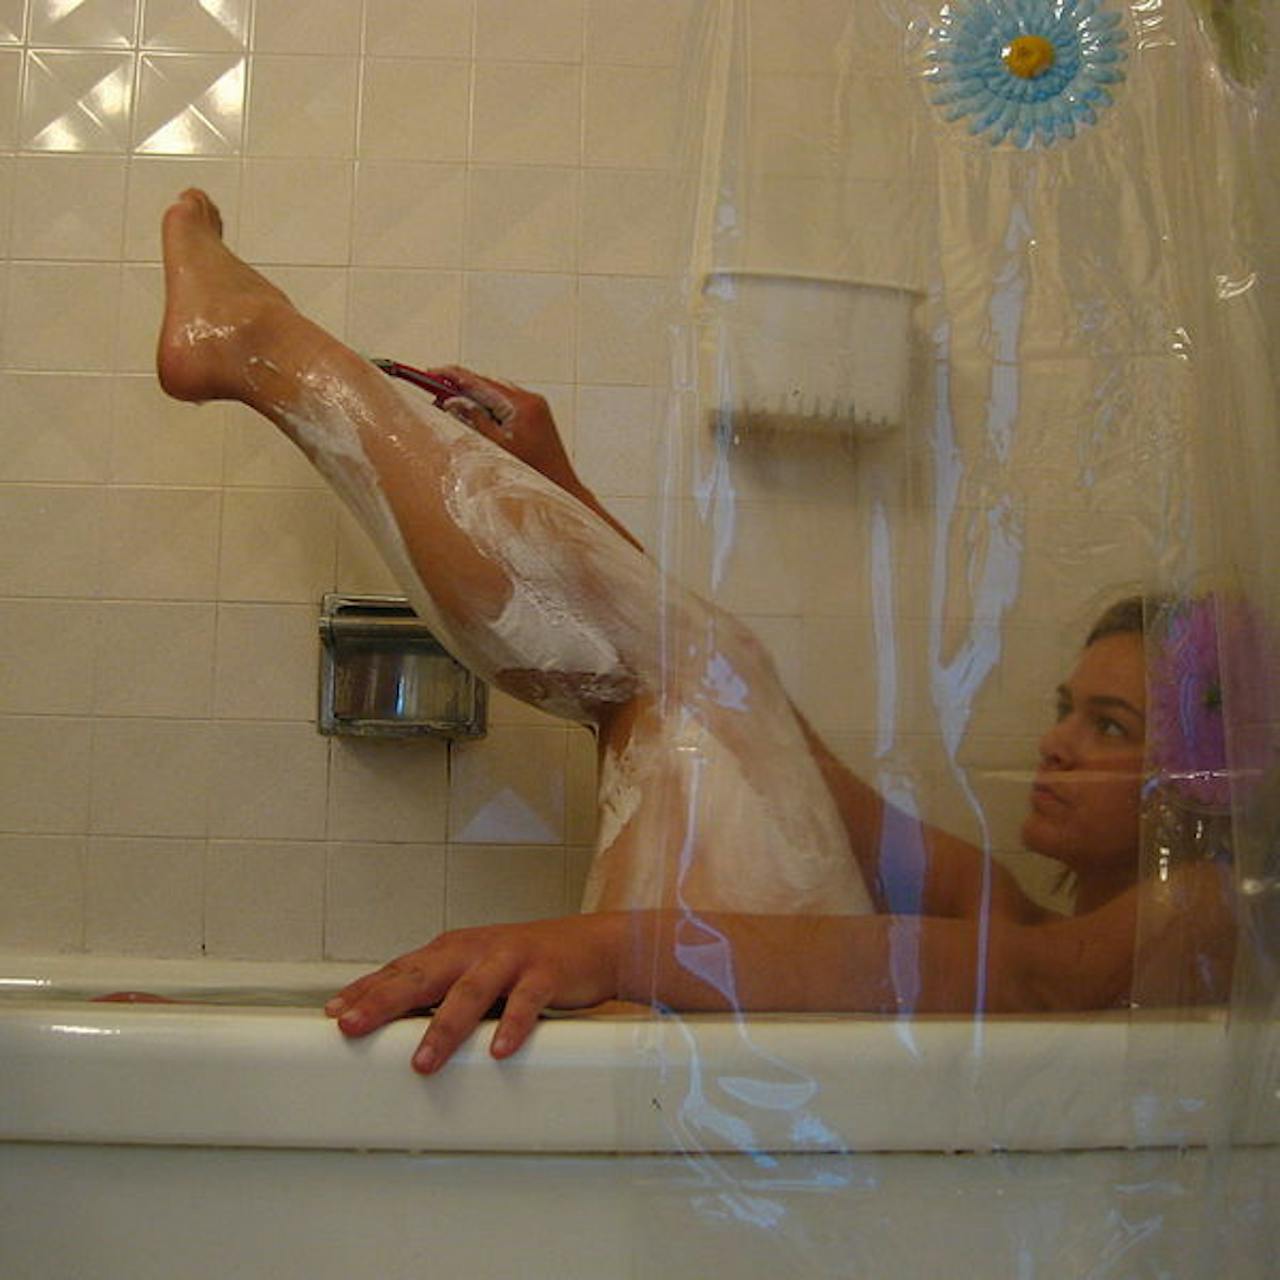 Een vrouw scheert haar benen in een badkuip.